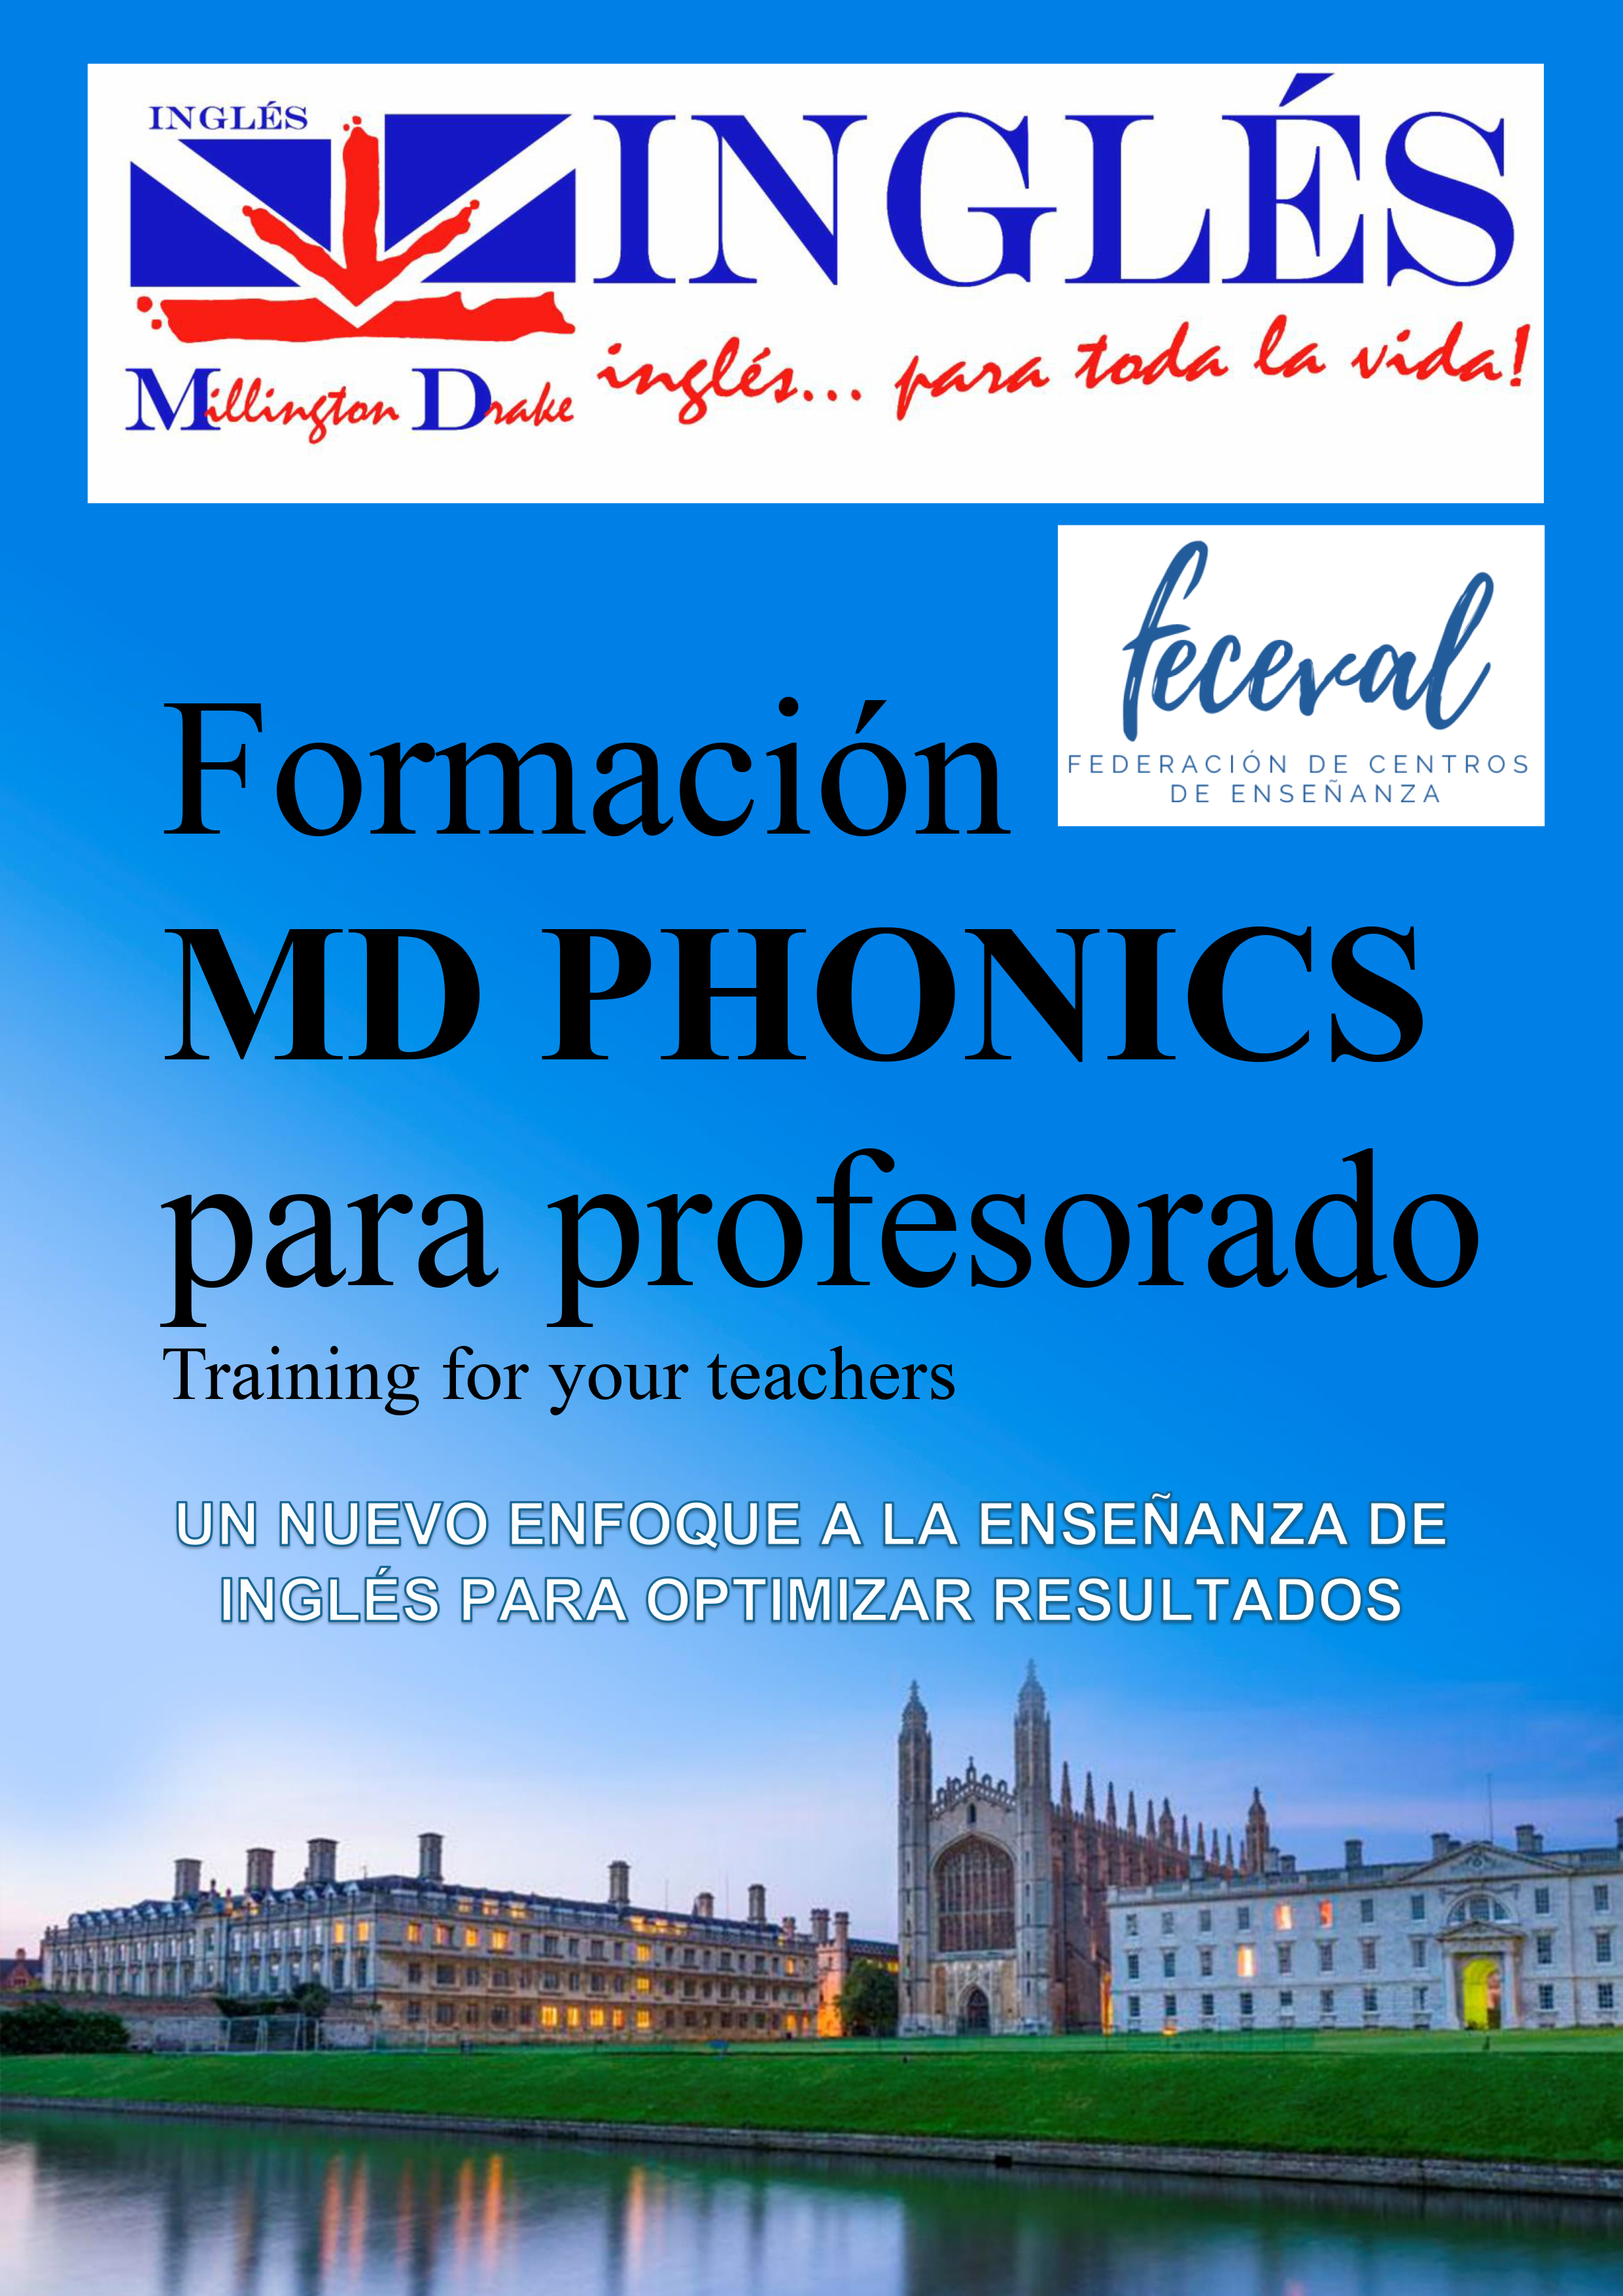 MD PHONICS - Un nuevo enfoque en la enseñanza de inglés